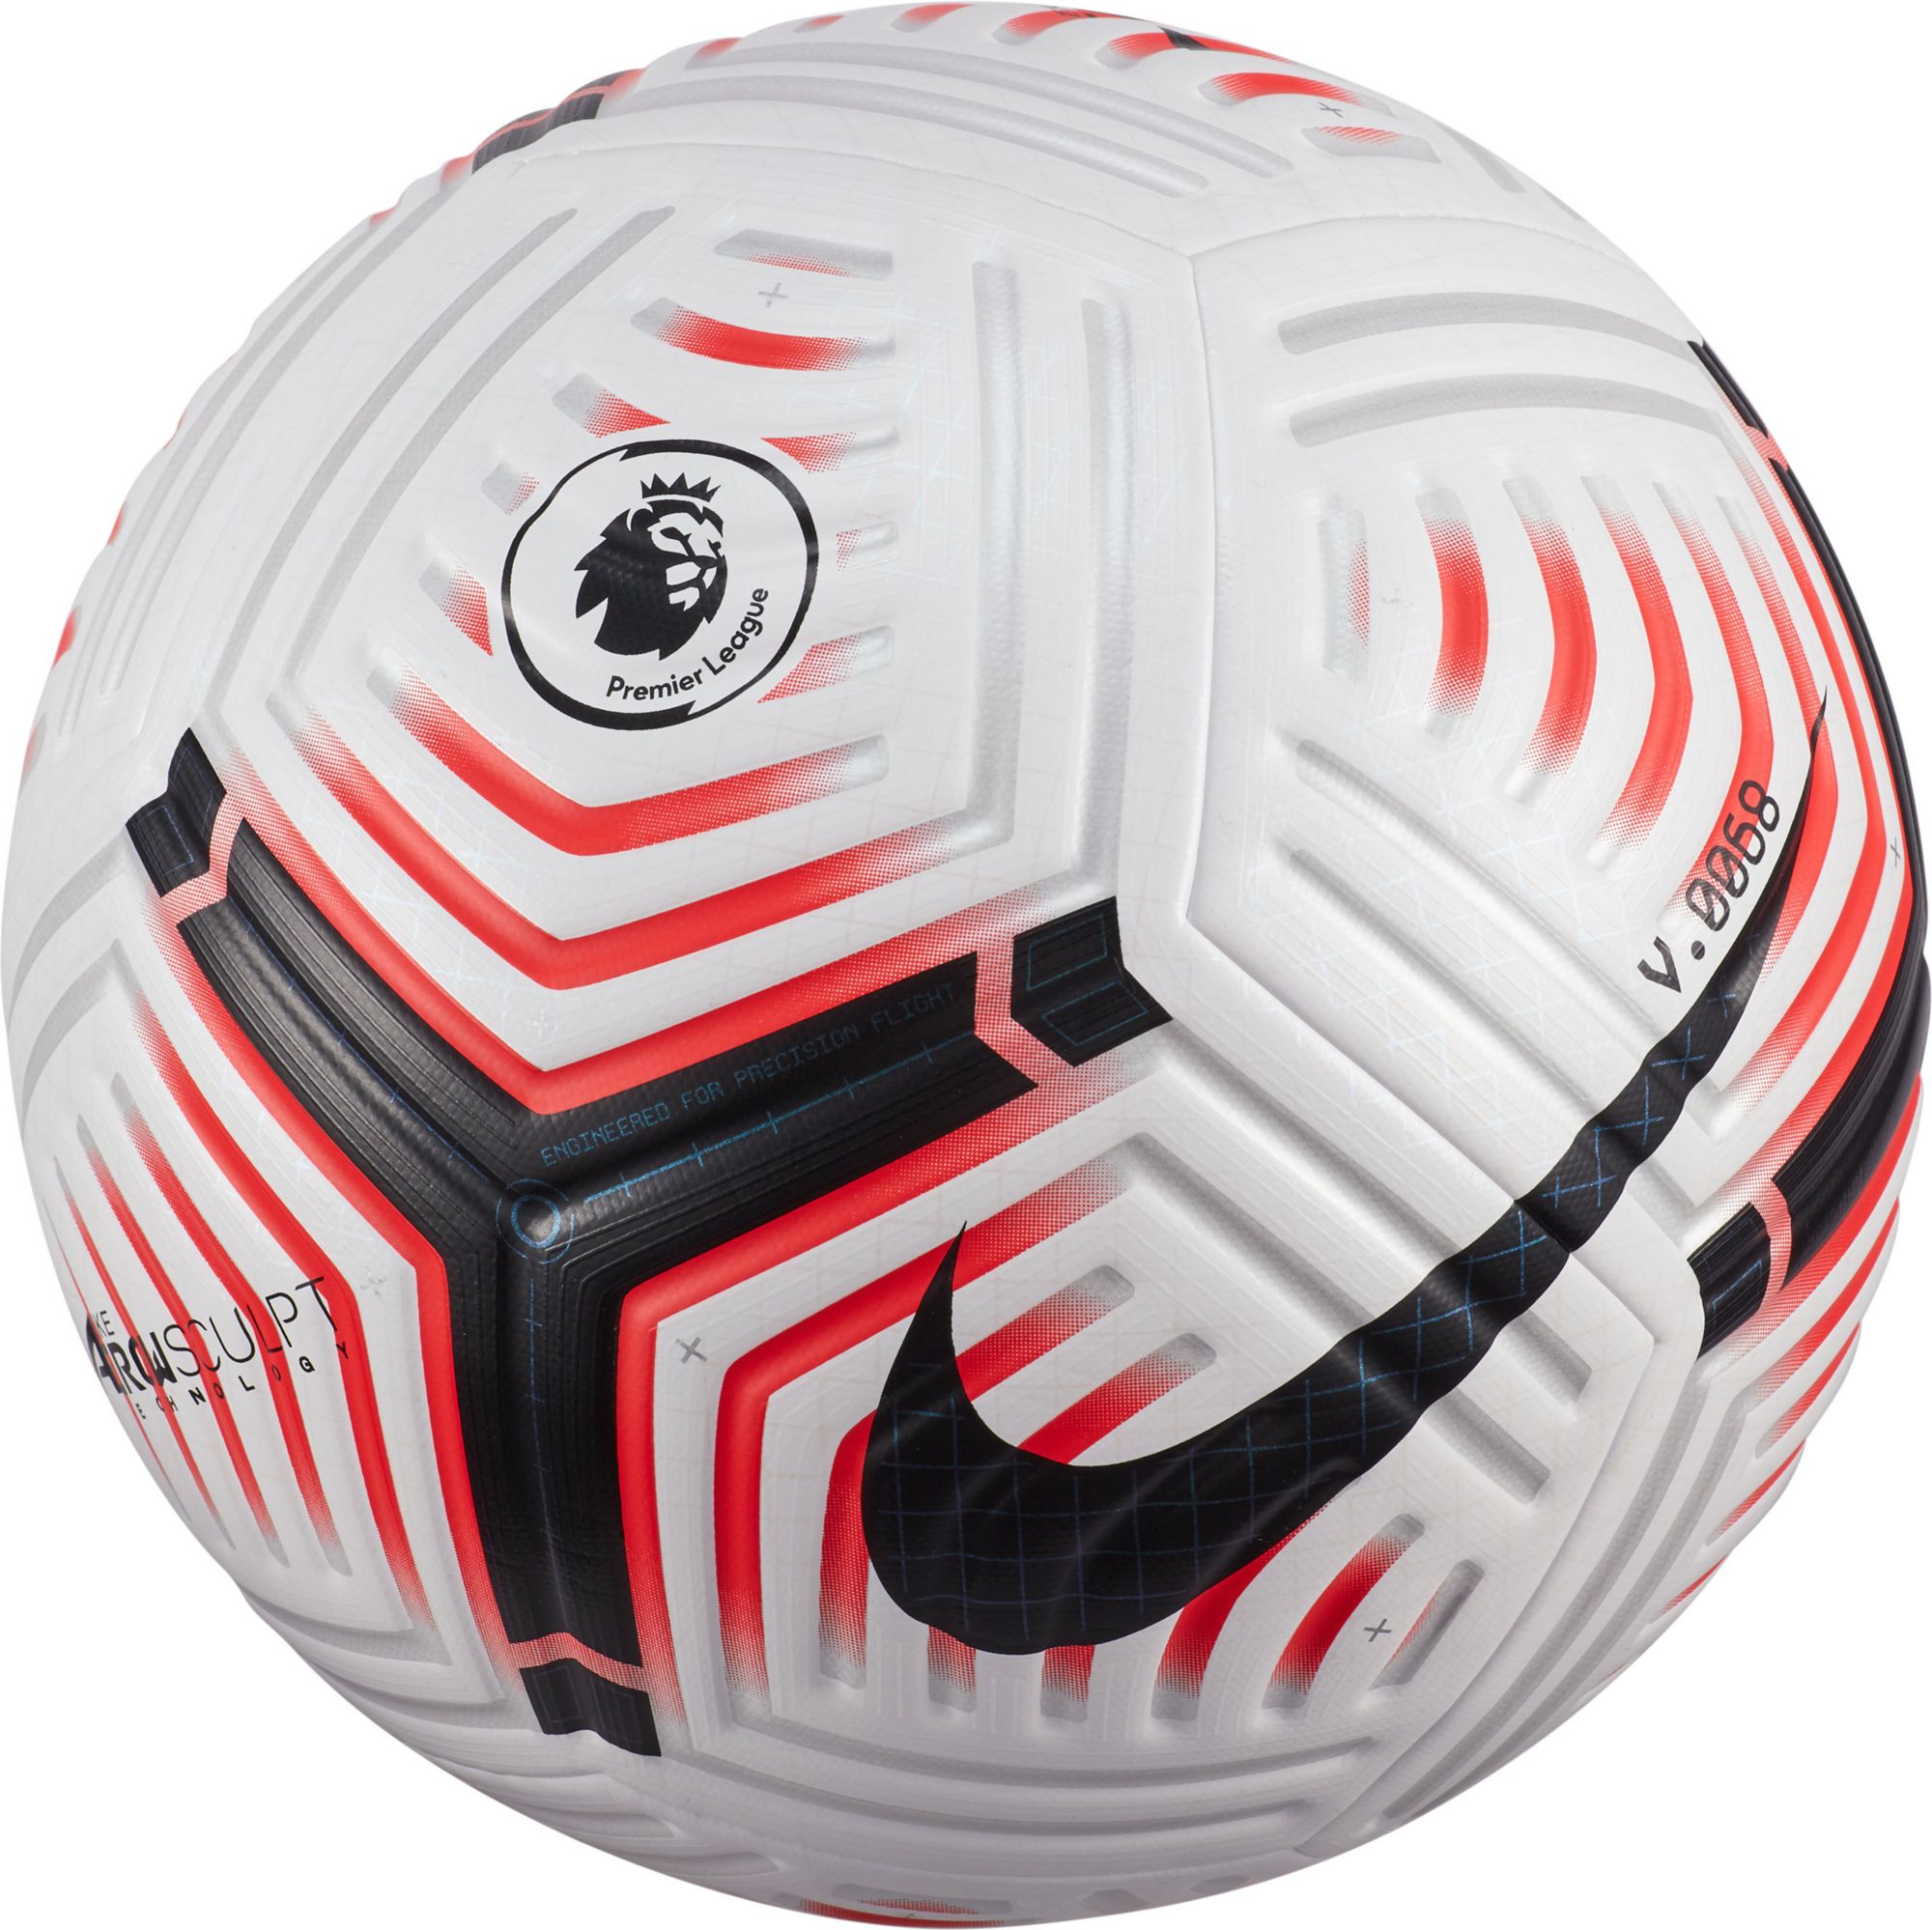 official match soccer ball sale